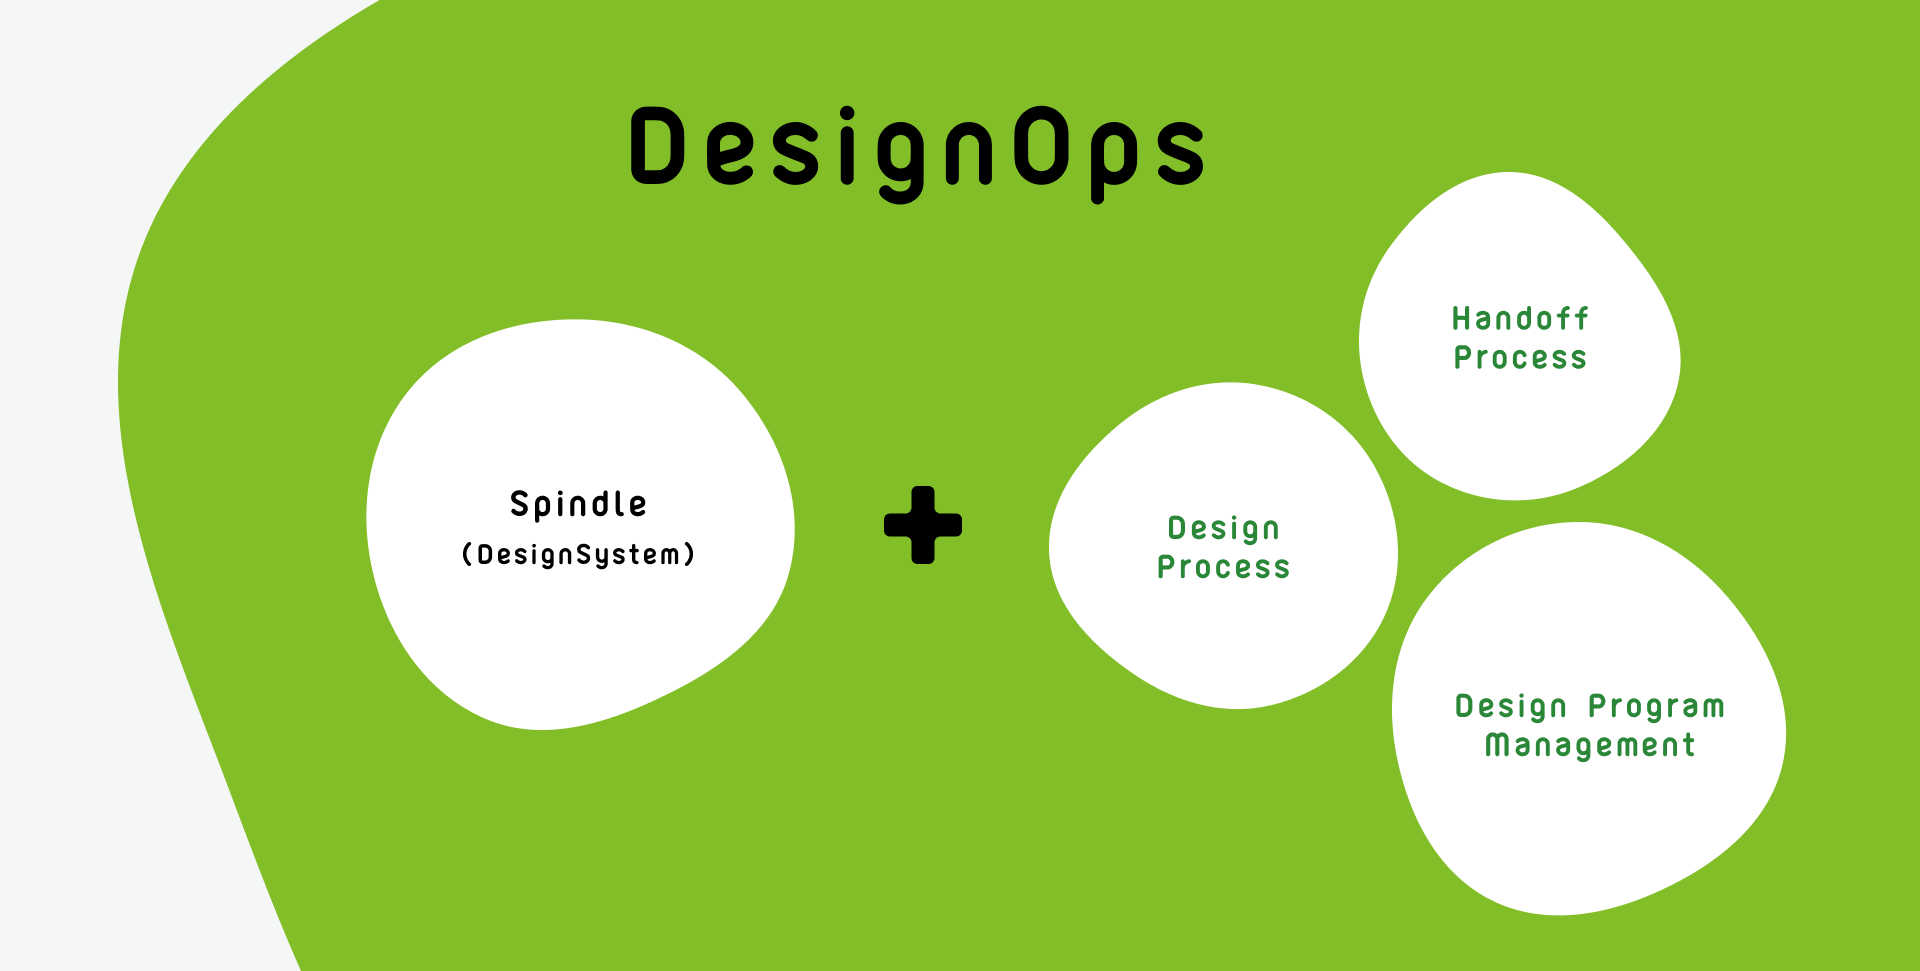 DesignOpsの構成として、デザインシステムとデザインプロセス、連携プロセス、デザインの課題解決管理がつながるイメージ図